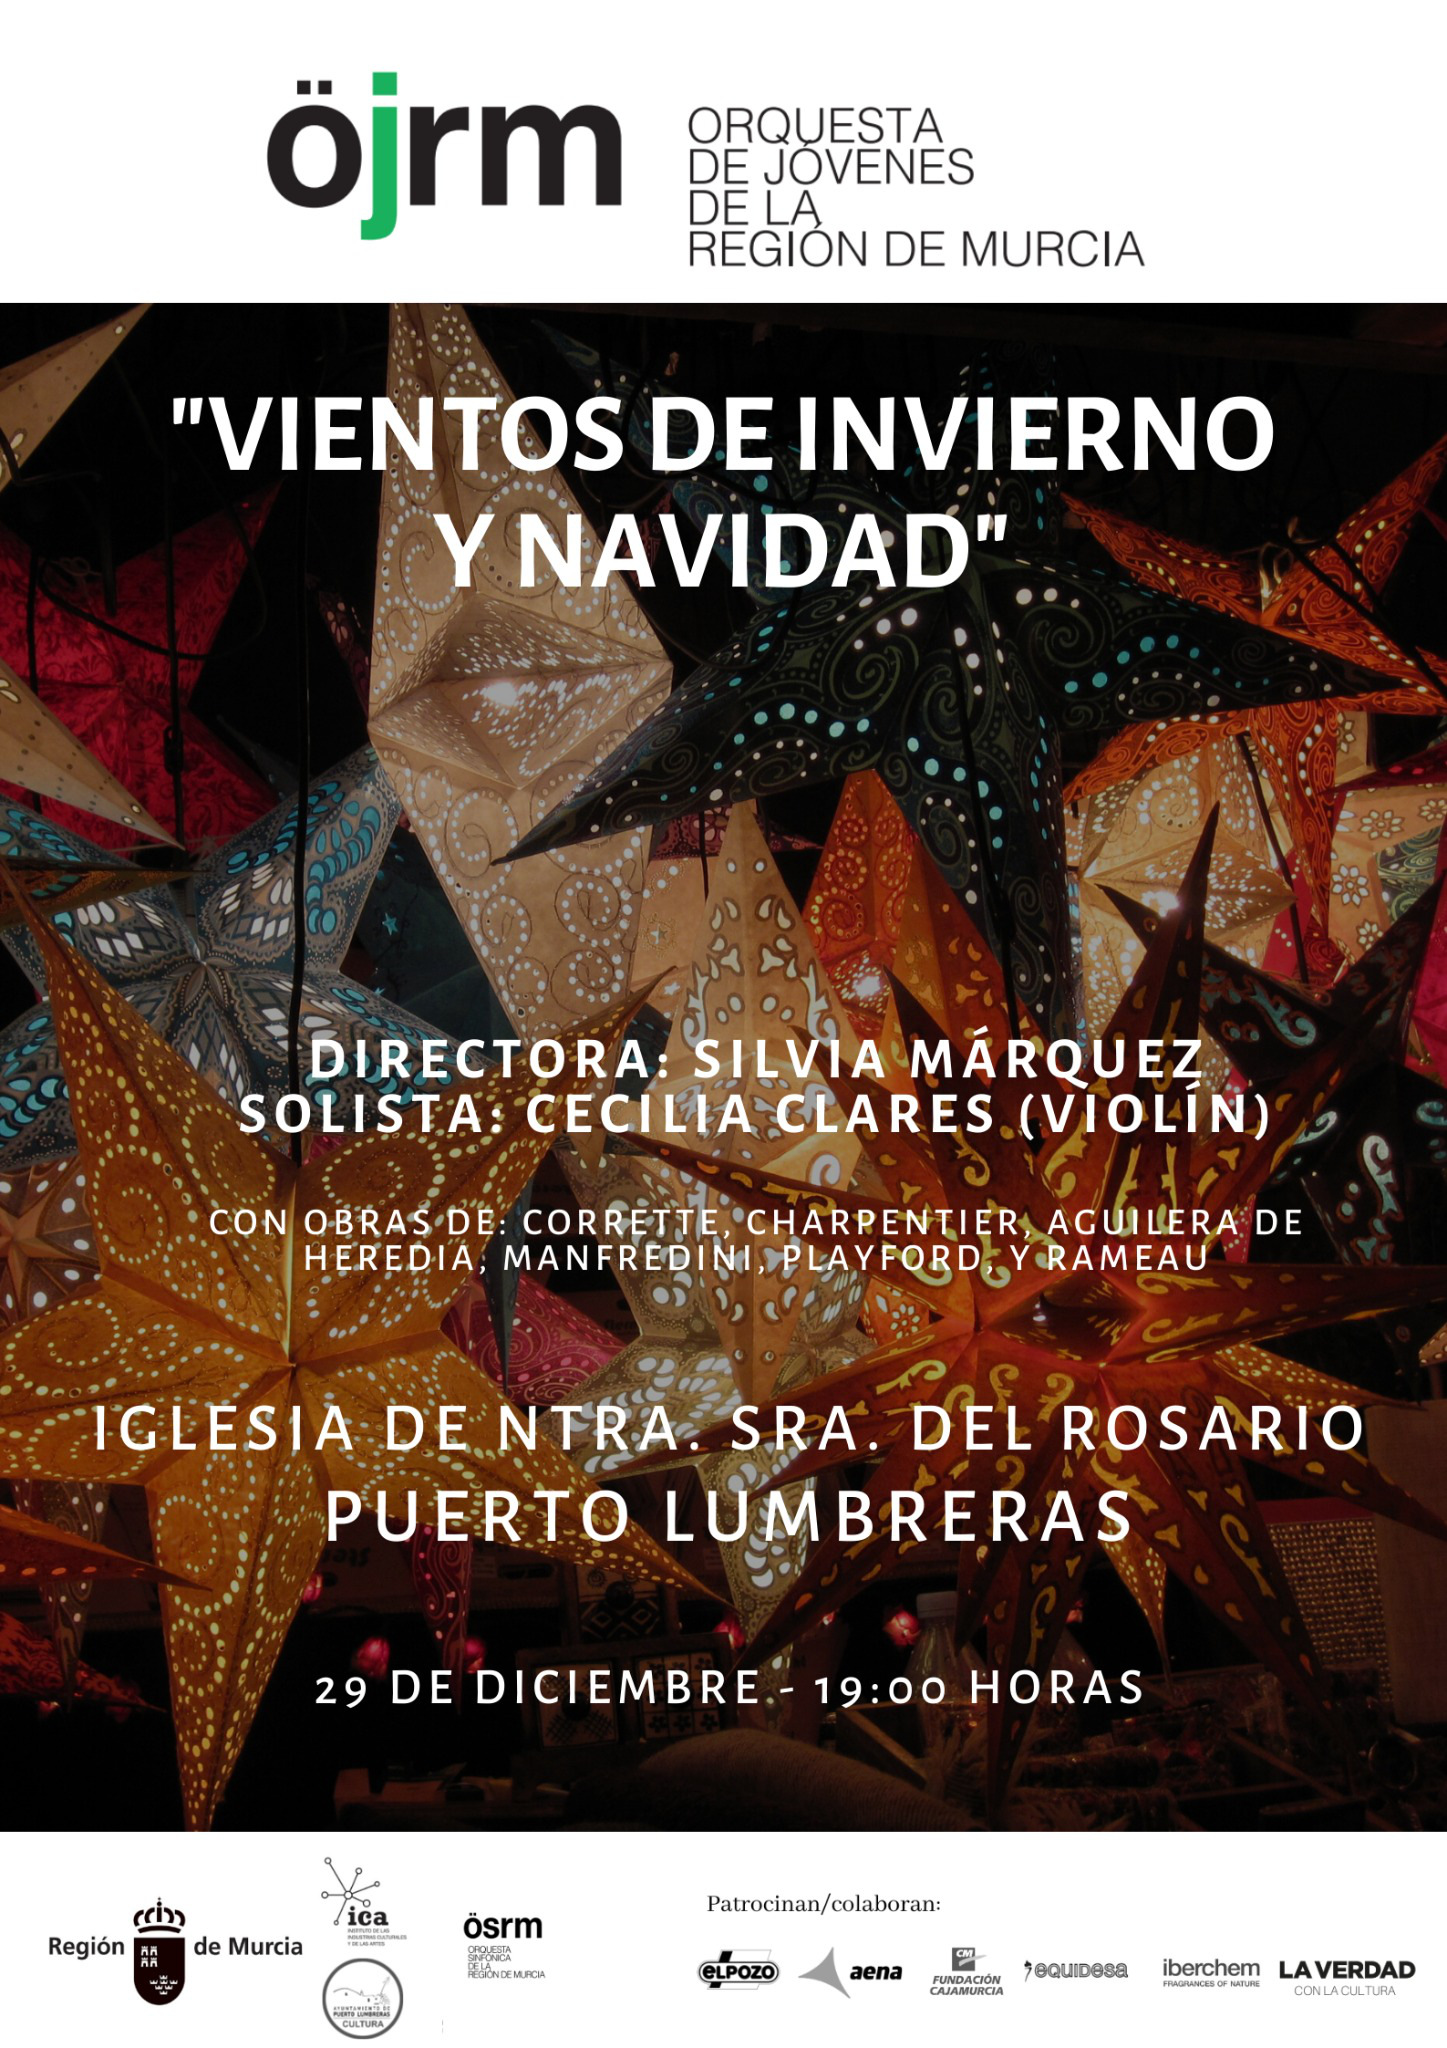 Imagen del cartel del concierto de la Orquesta de Jóvenes de la Región de Murcia en Puerto Lumbreras